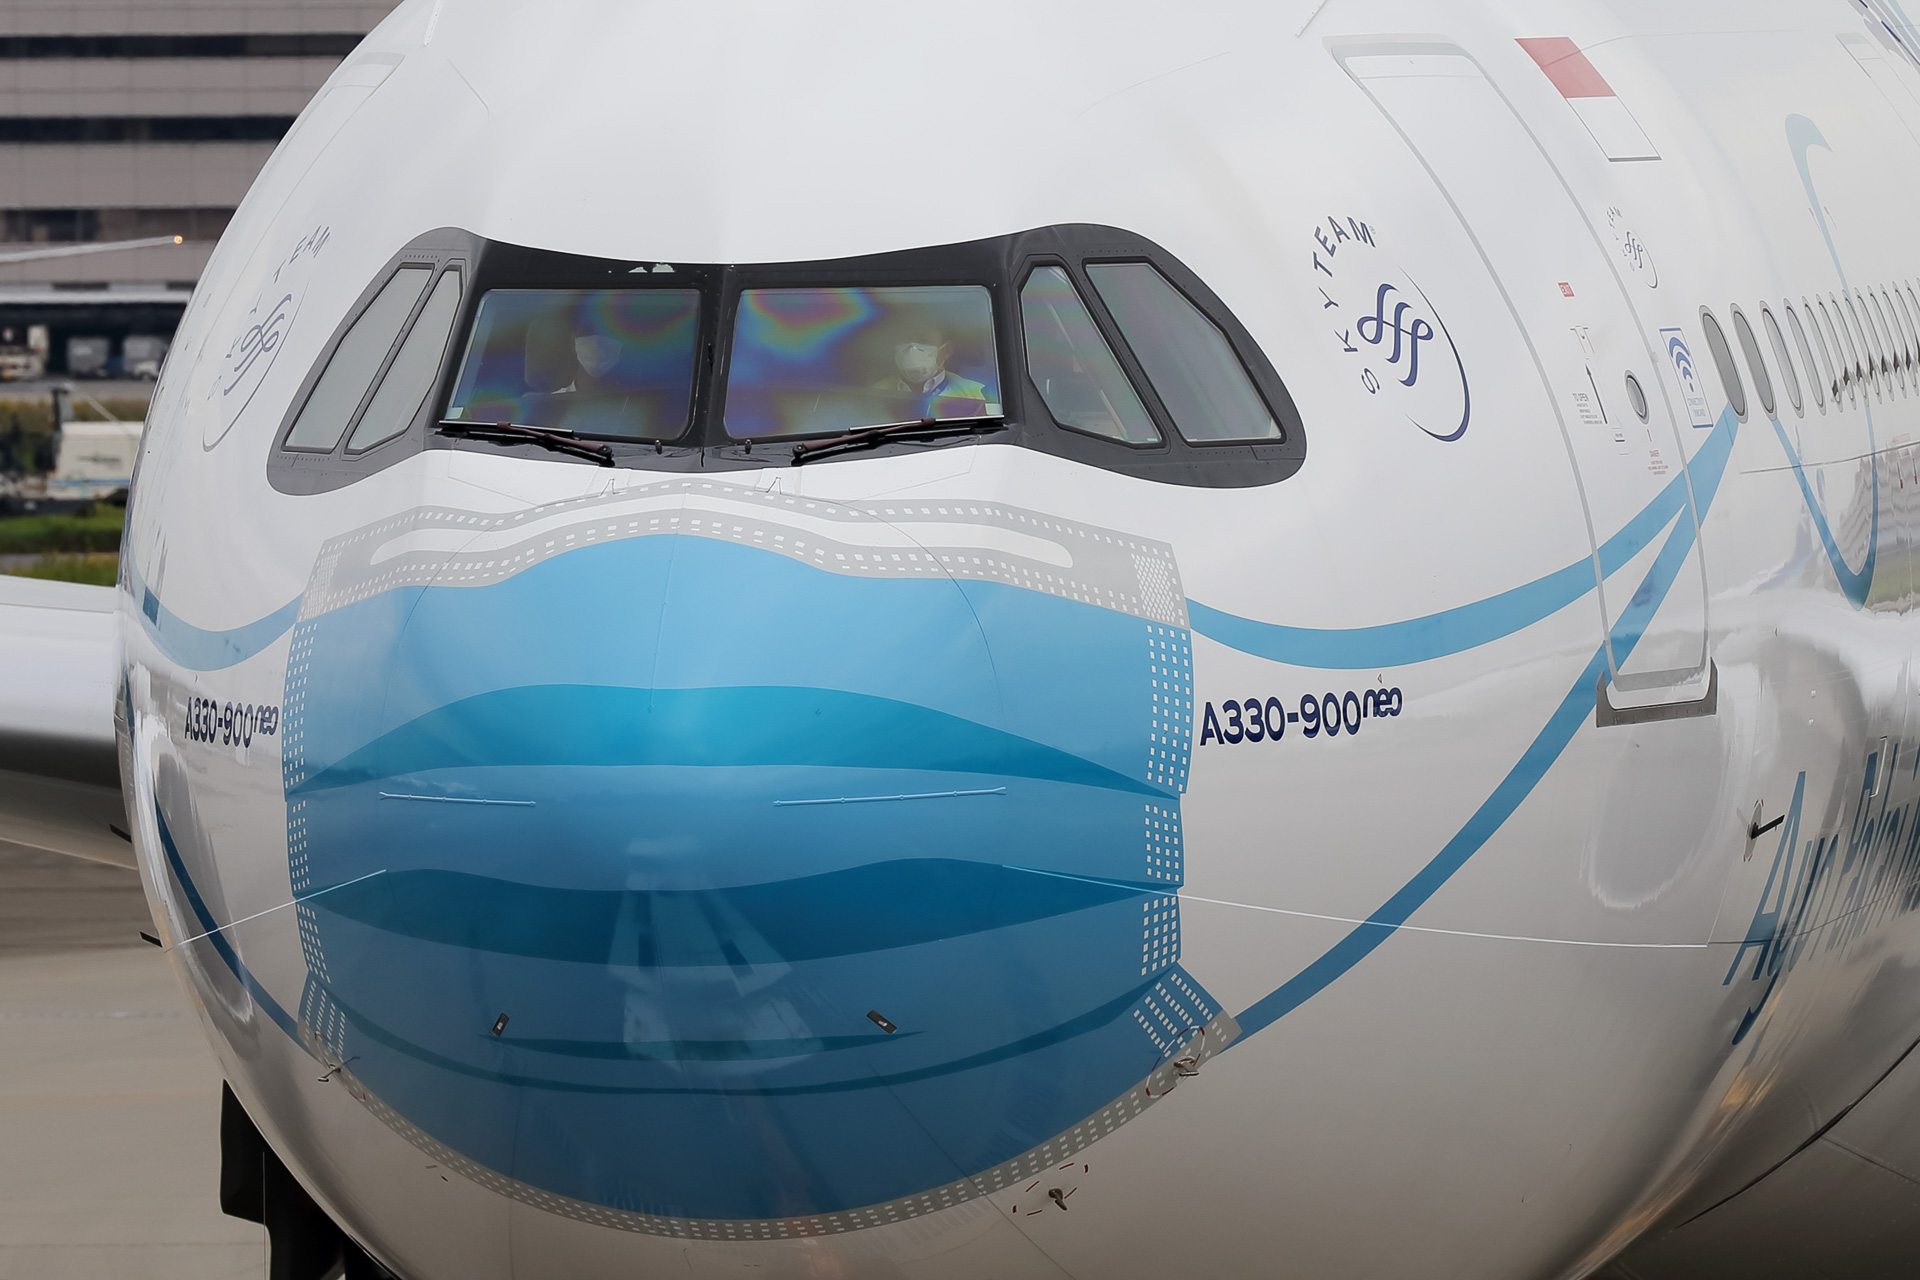 マスクを着けた飛行機の機内に入ってみた ガルーダ インドネシア航空 A330 900neoのビジネス エコノミークラスを写真で紹介 トラベル Watch